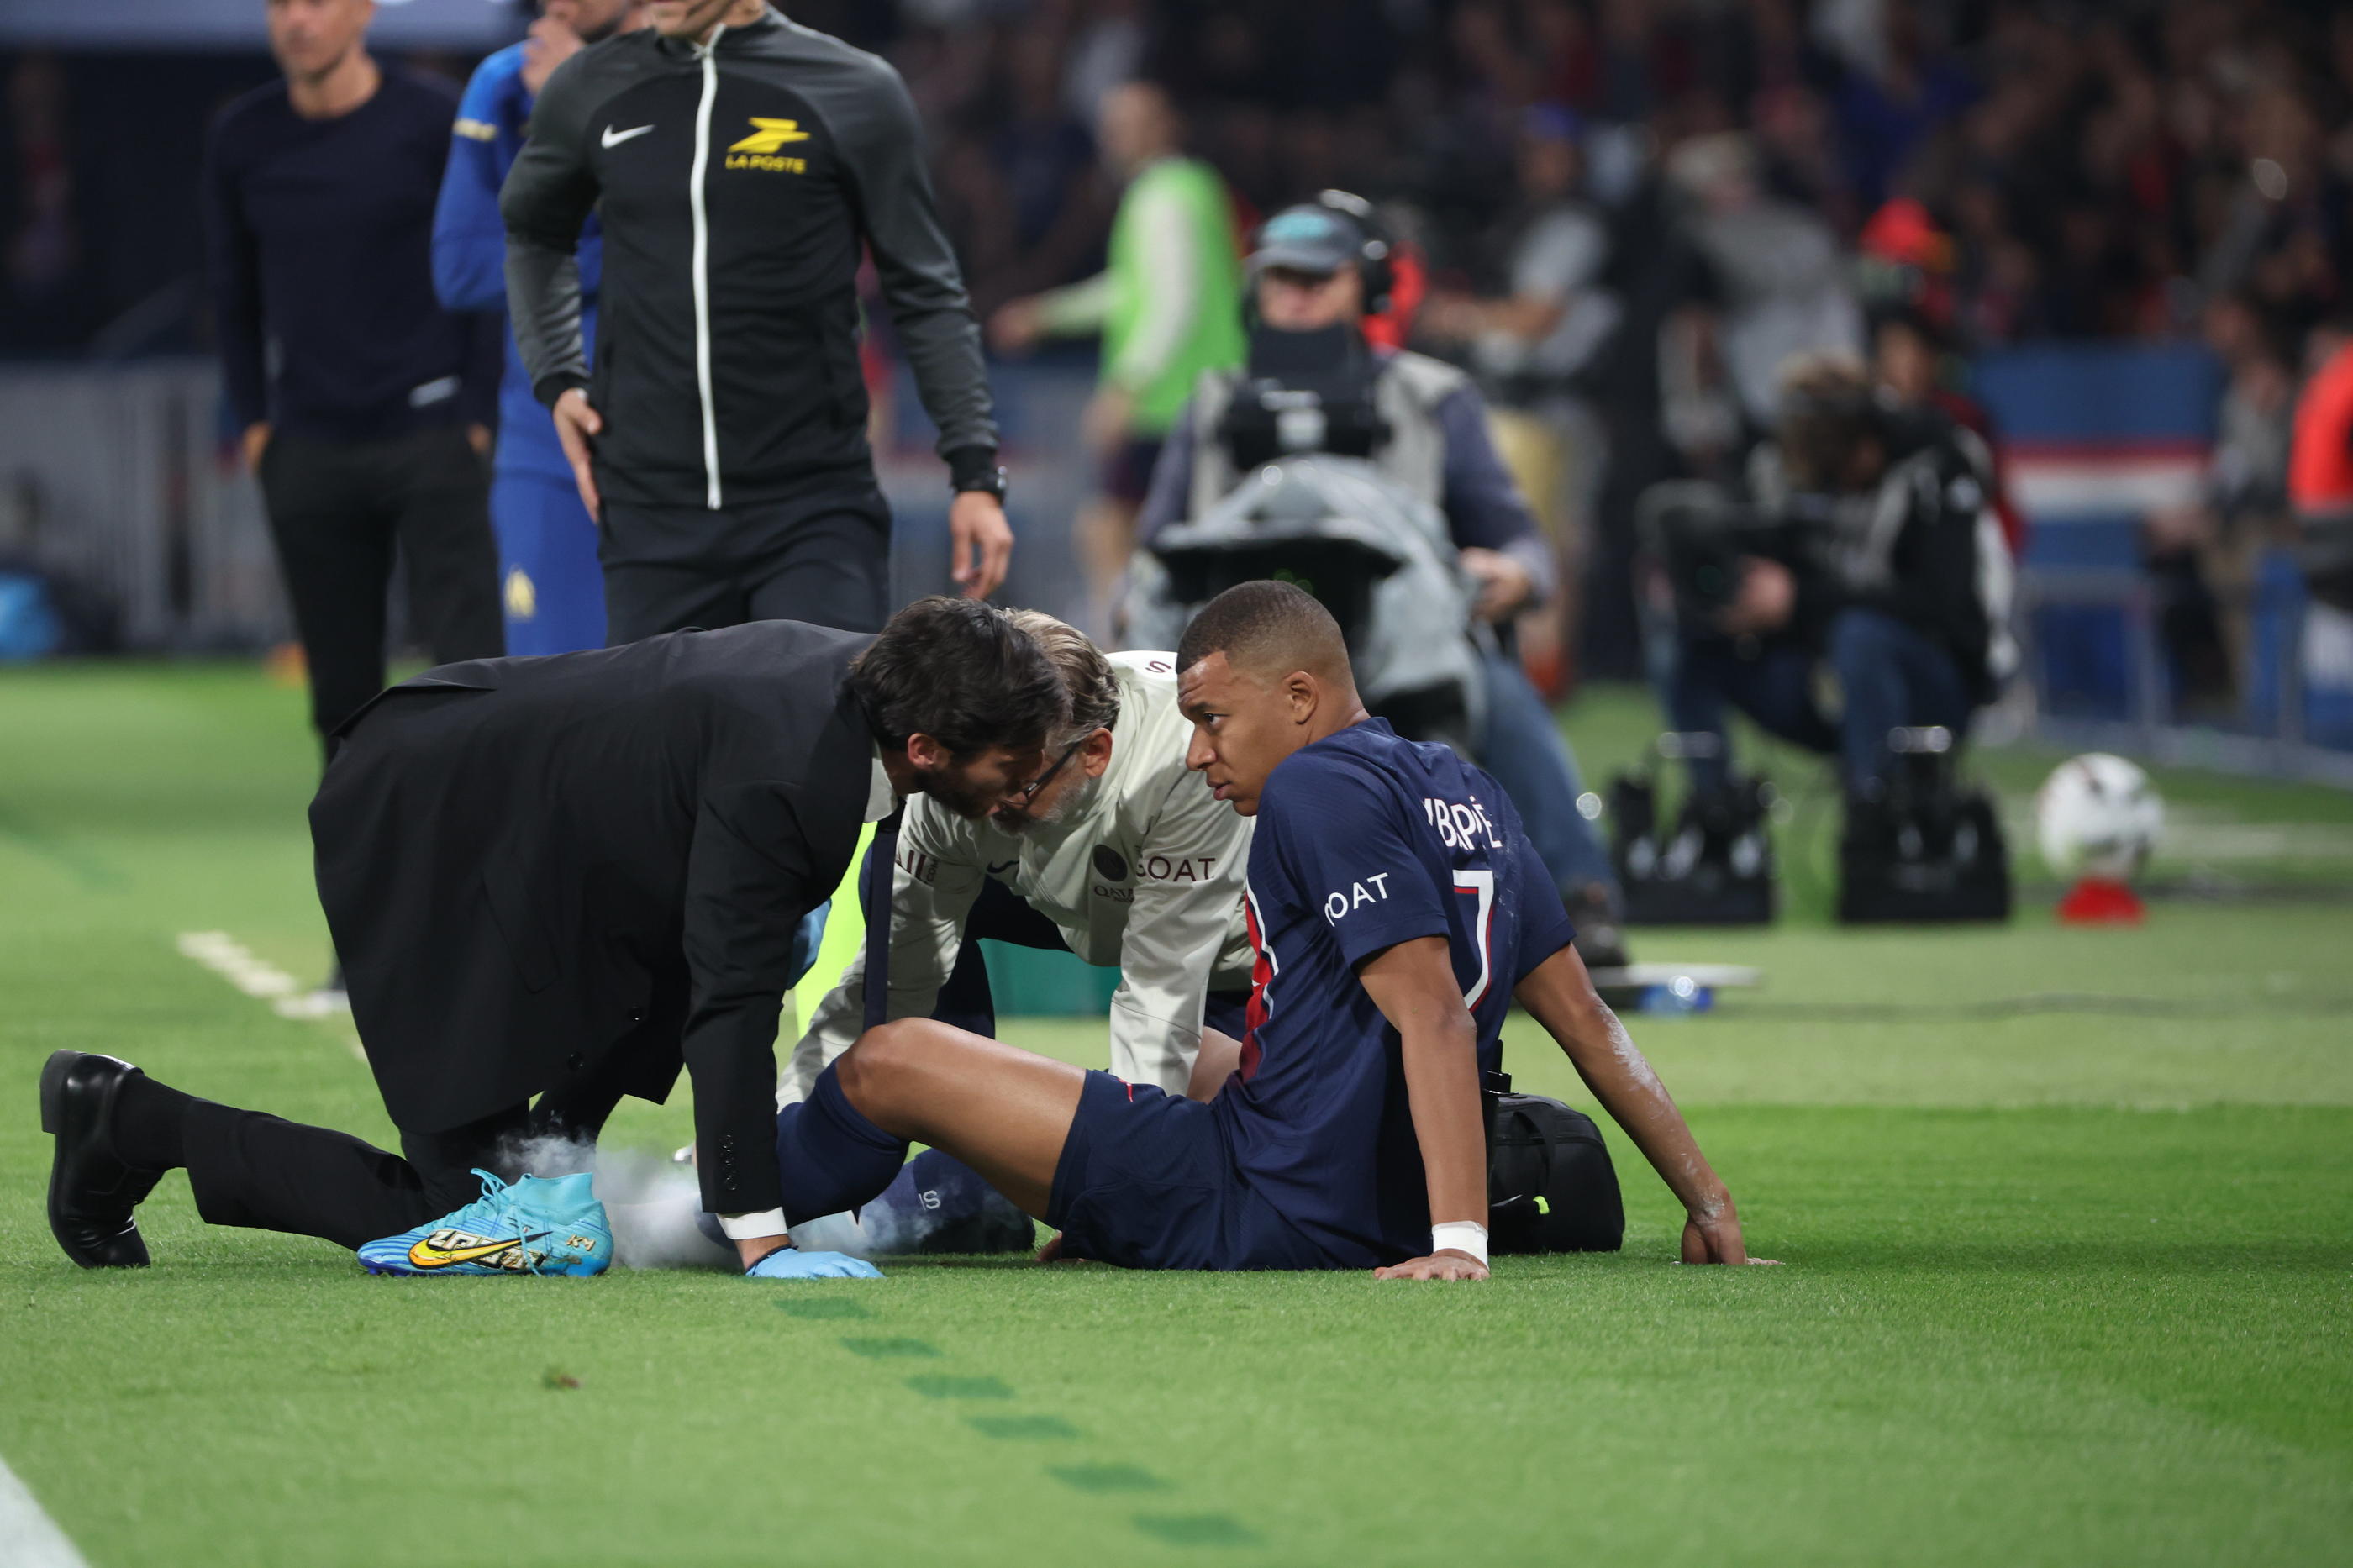 L'état de la cheville gauche de Kylian Mbappé n'inquiète pas le staff médical et le joueur. LP/Arnaud Journois